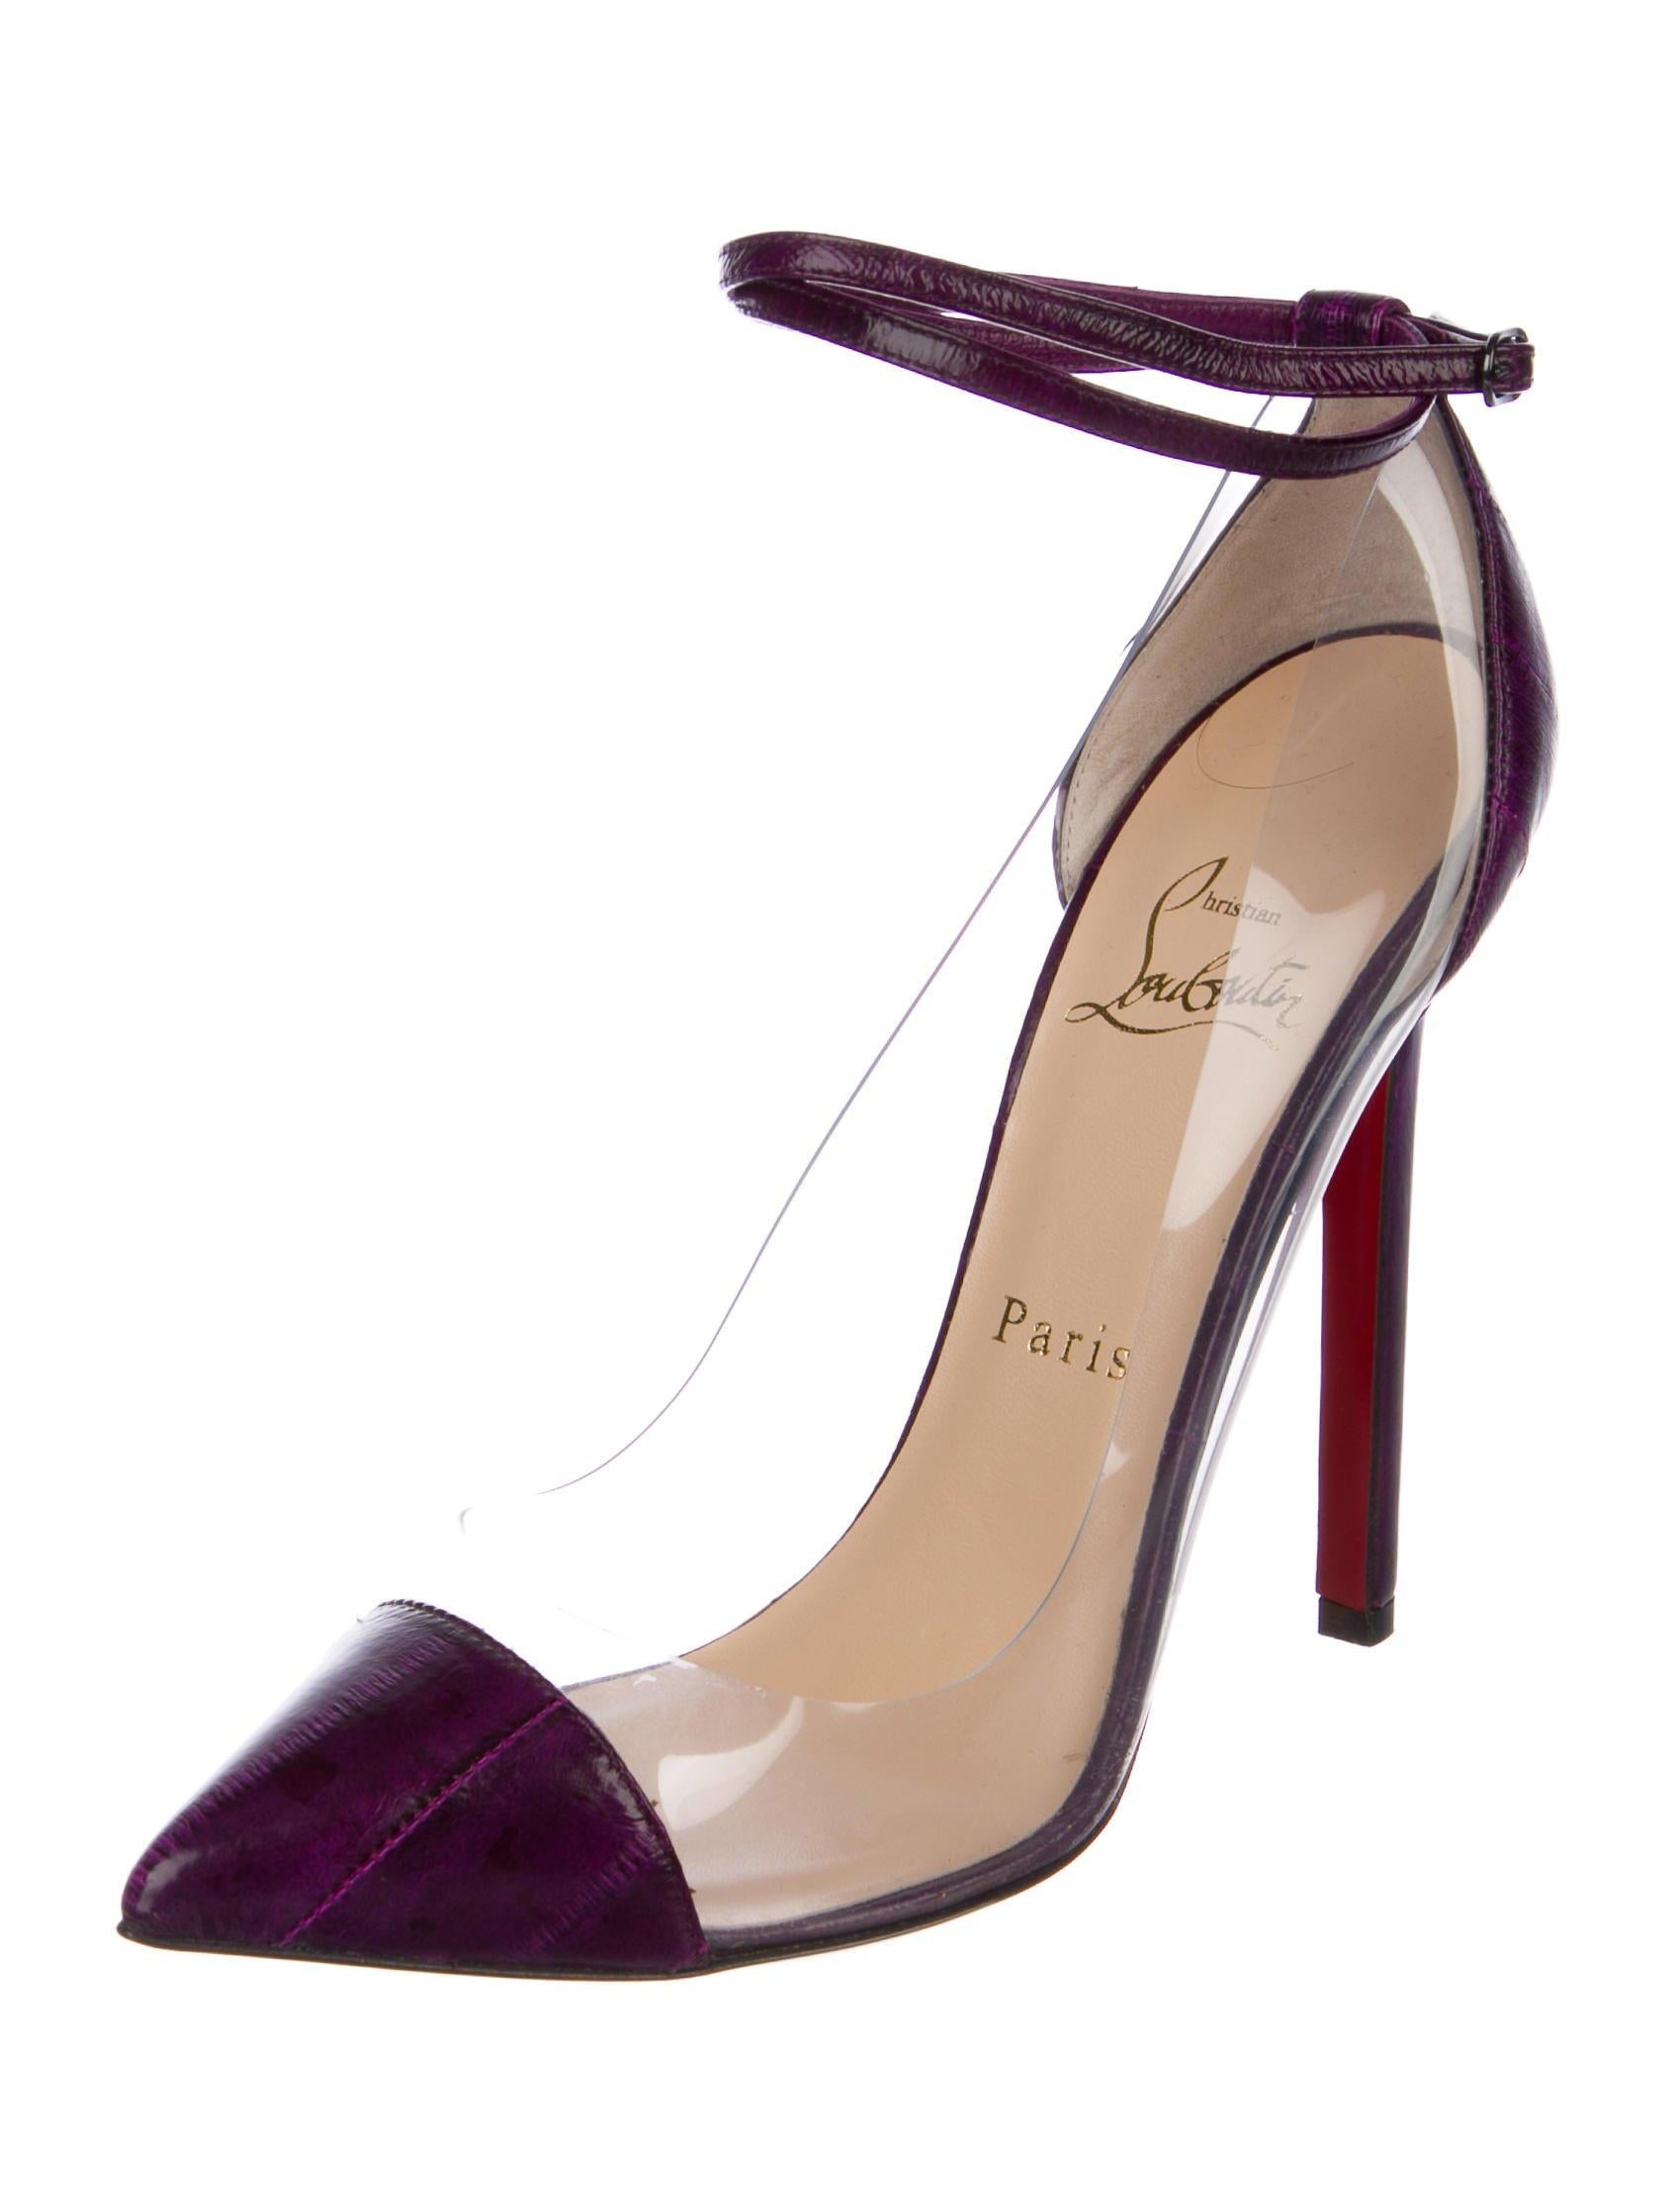 clear purple heels